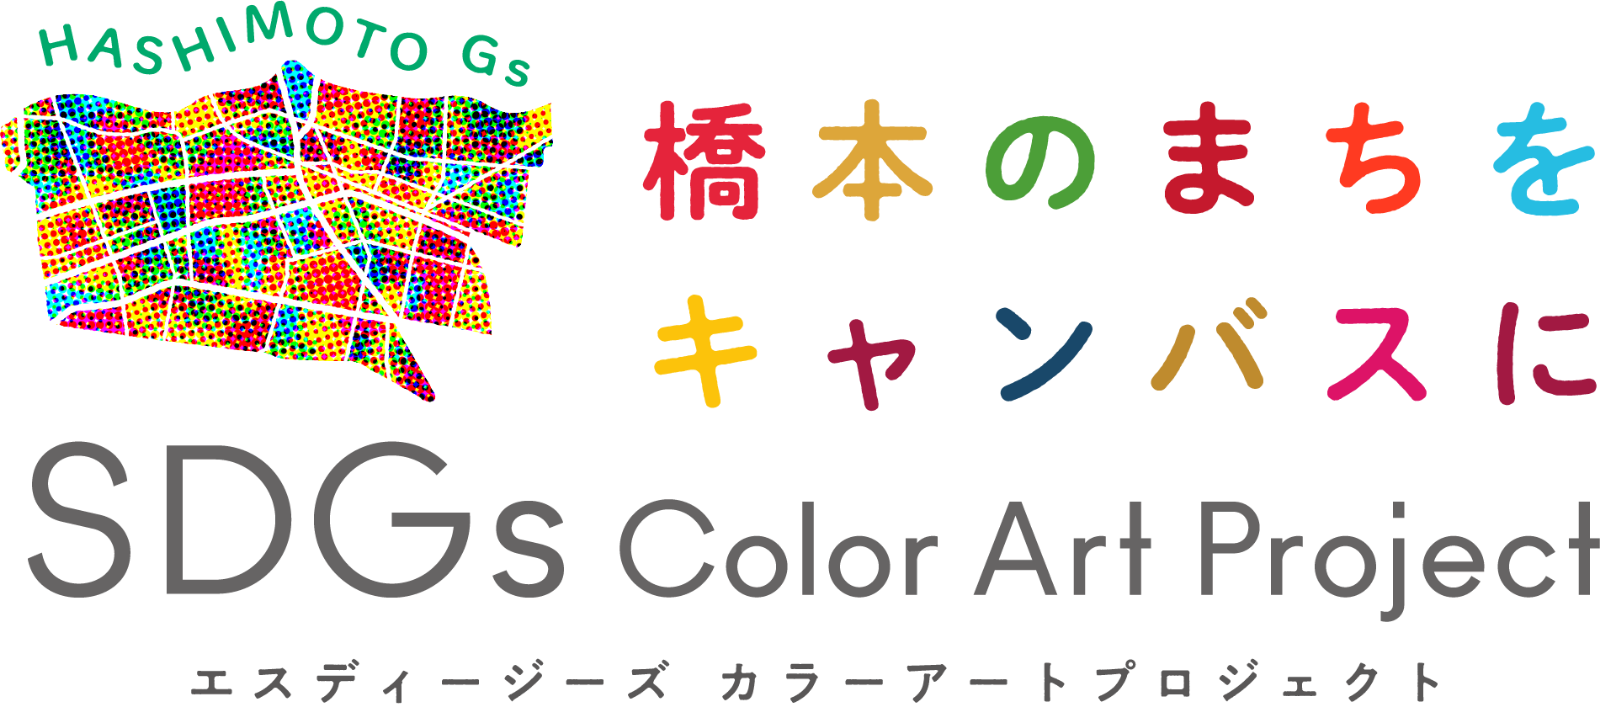 橋本のまちをキャンバスに SDGs Color Art Project